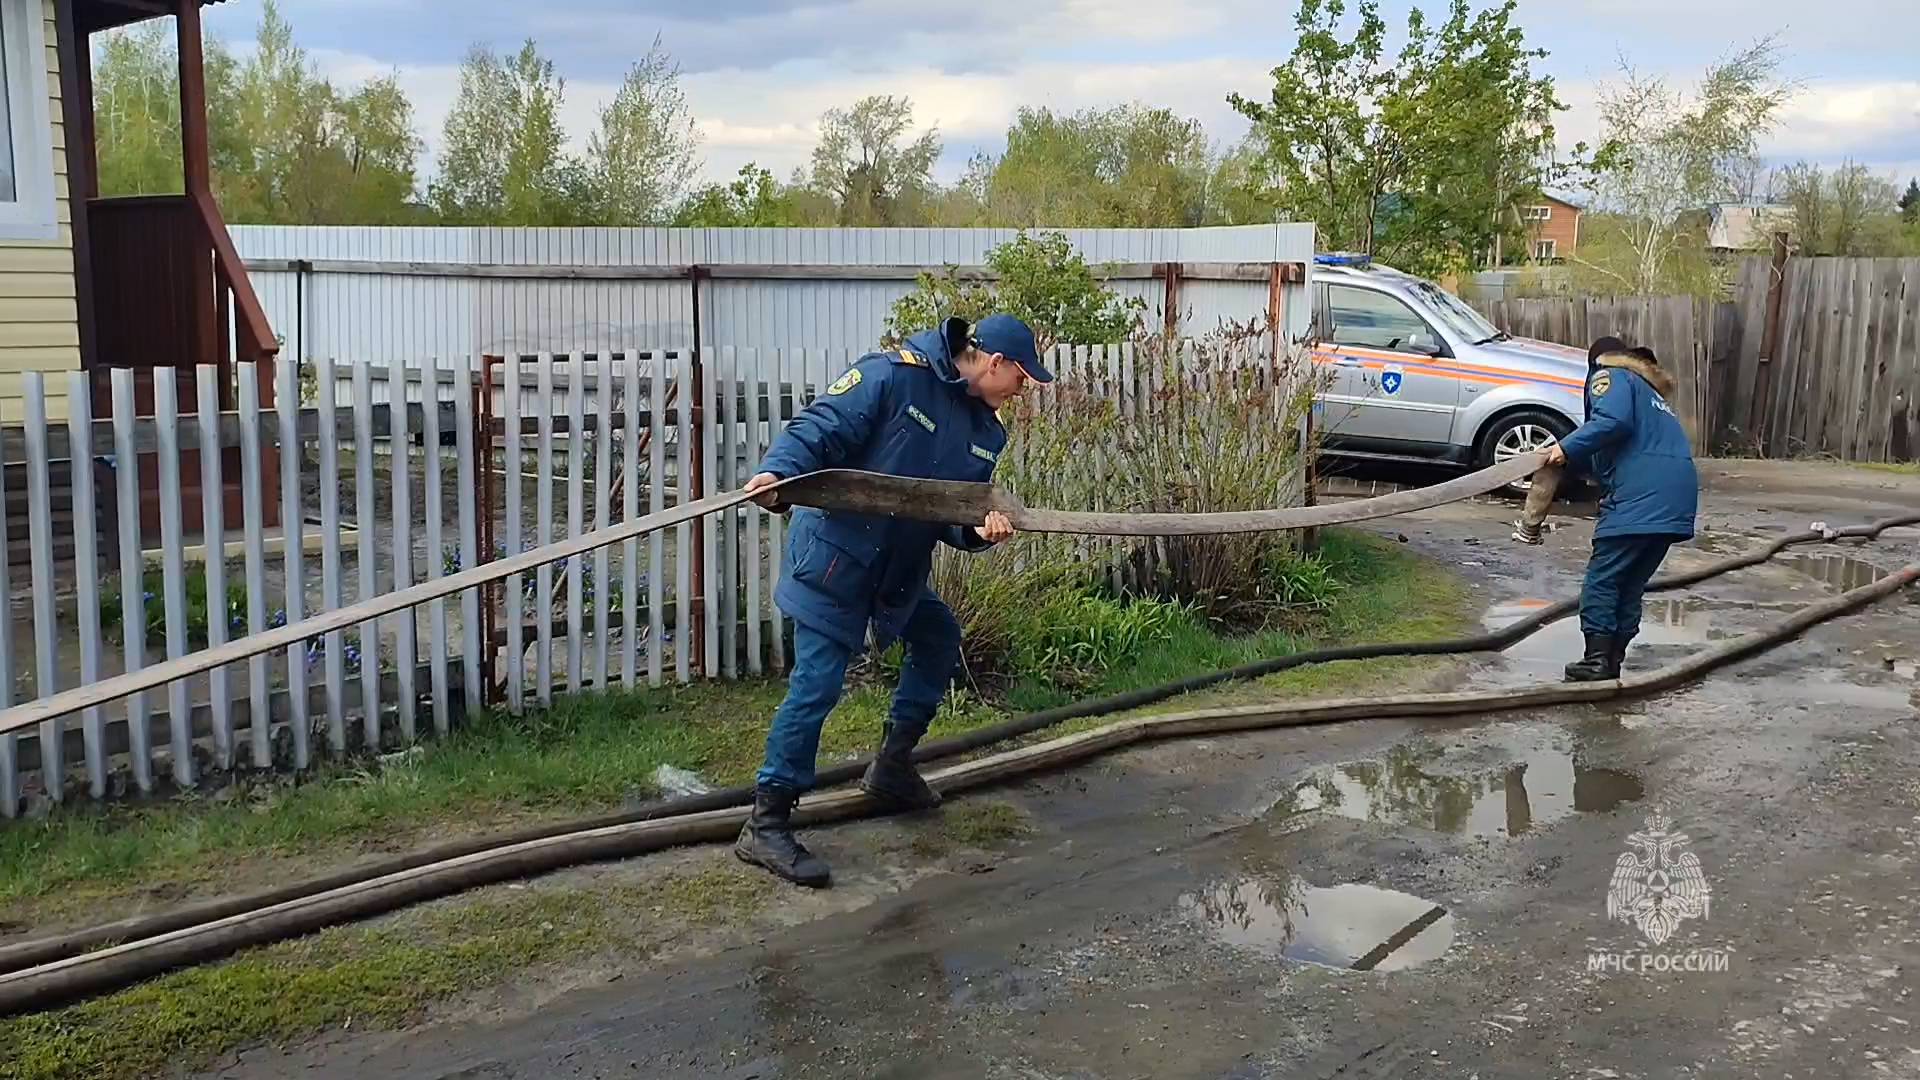 Сотрудники МЧС России продолжают работы по ликвидации последствий паводка в регионе.